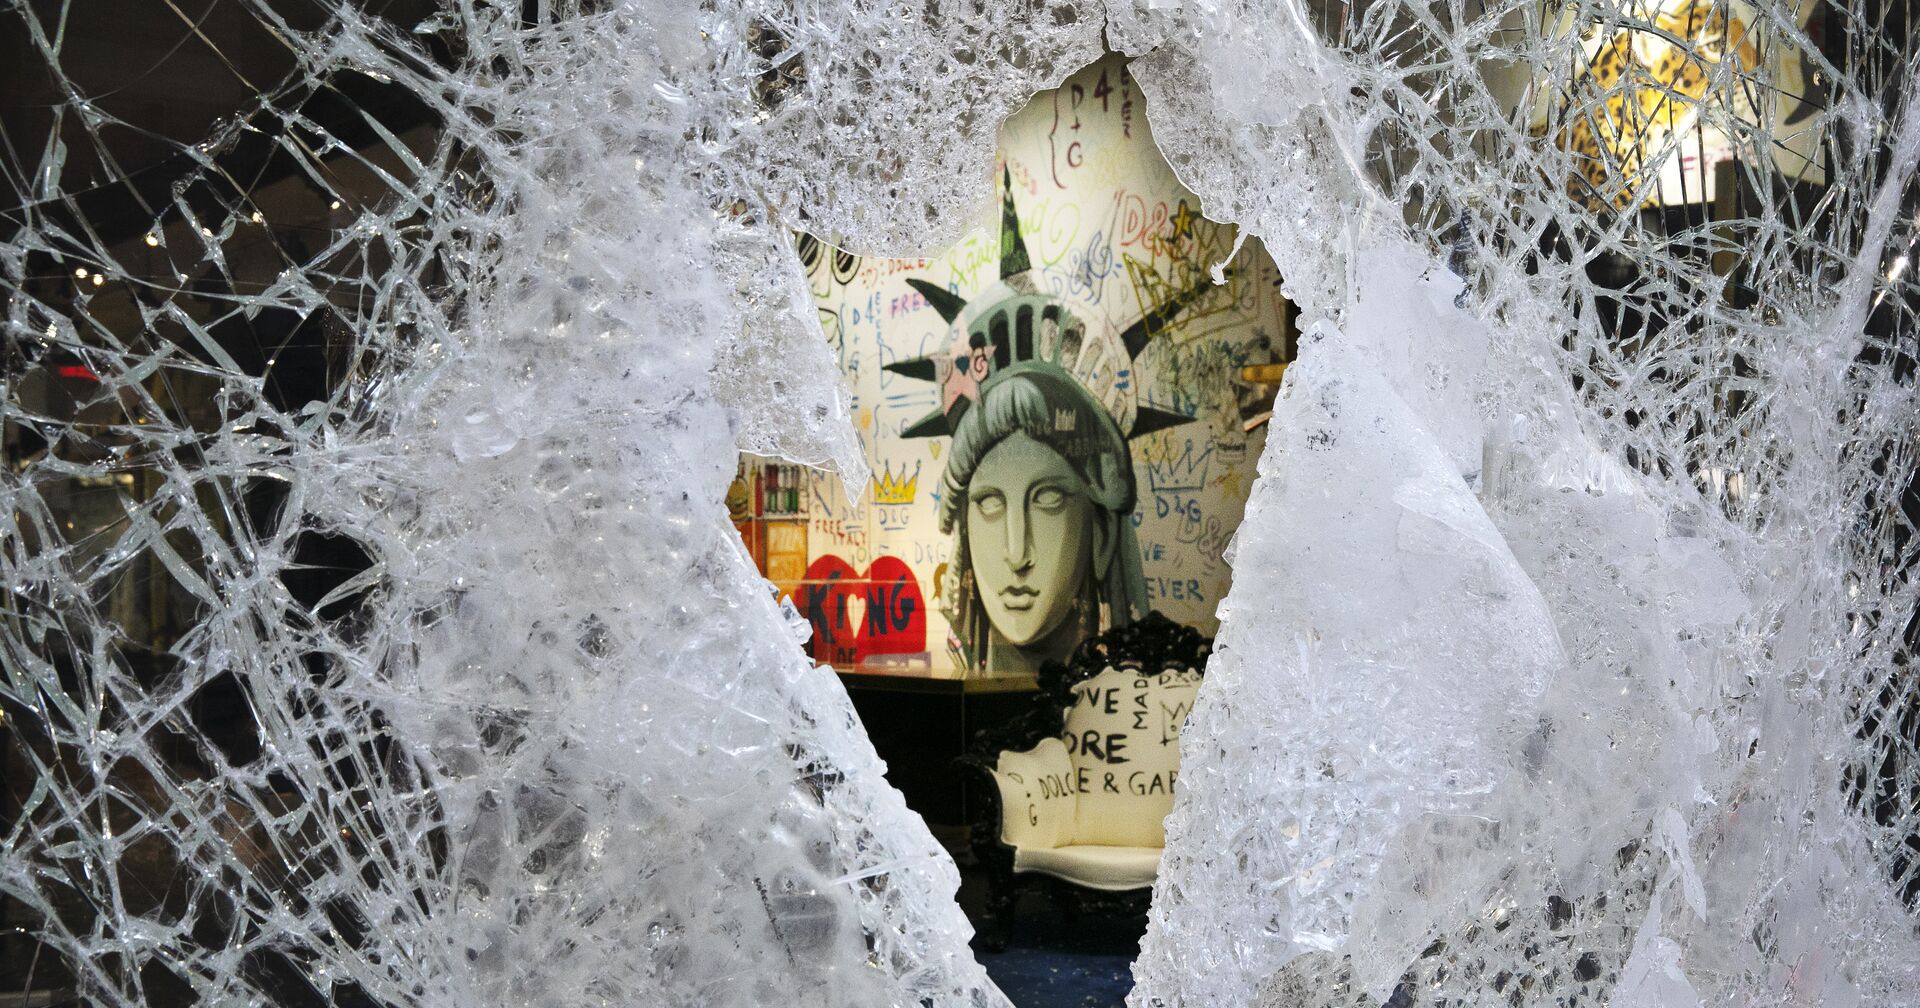 Граффити, изображающее лицо Статуи свободы, через разбитую витрину магазина в Нью-Йорке, США - ИноСМИ, 1920, 20.11.2020